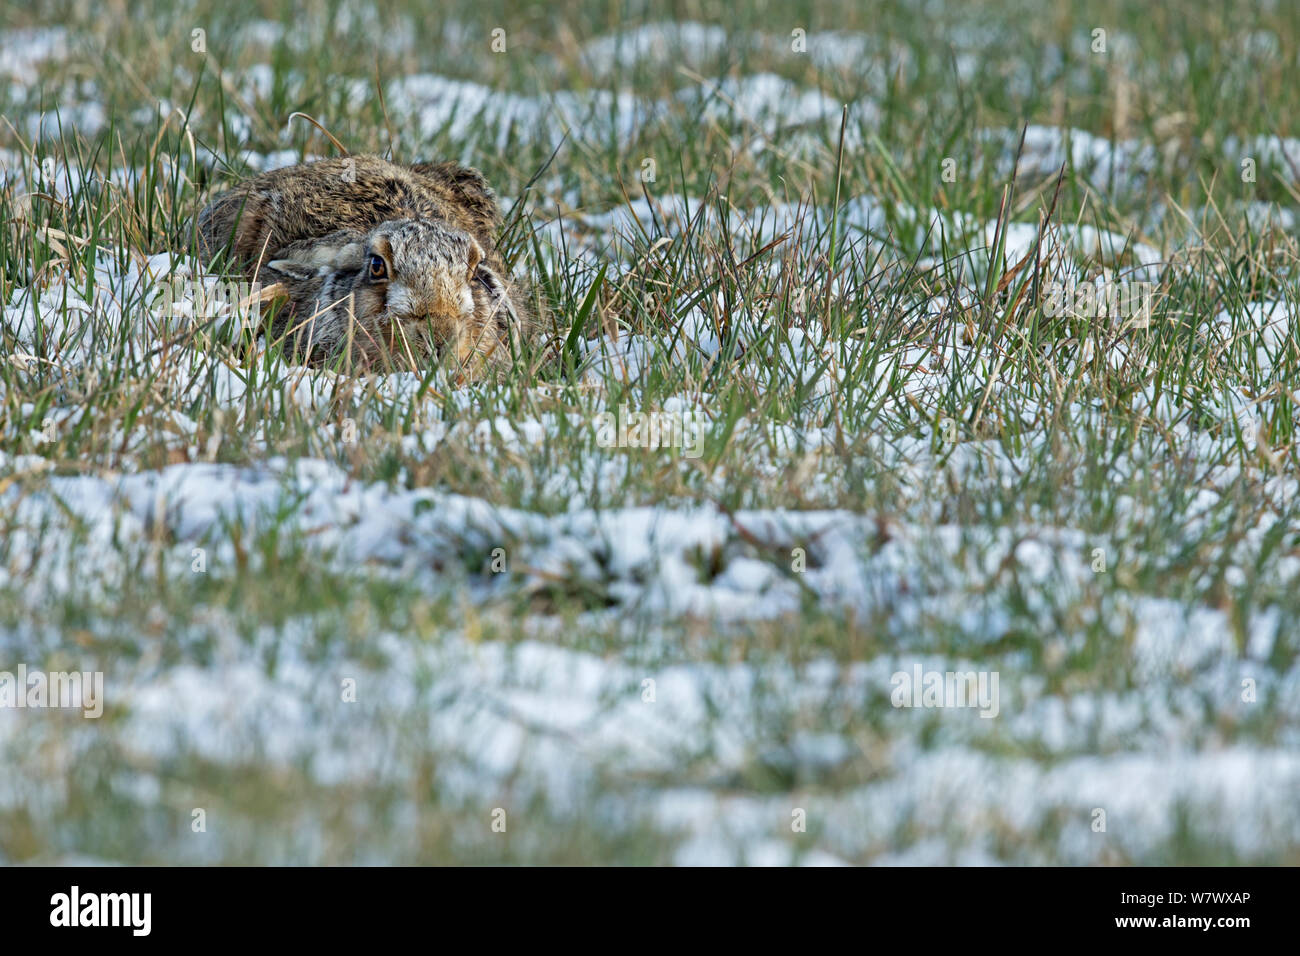 Europäische Hare (Lepus europaeus) in Form im verschneiten Wiesen, UK, März. Stockfoto